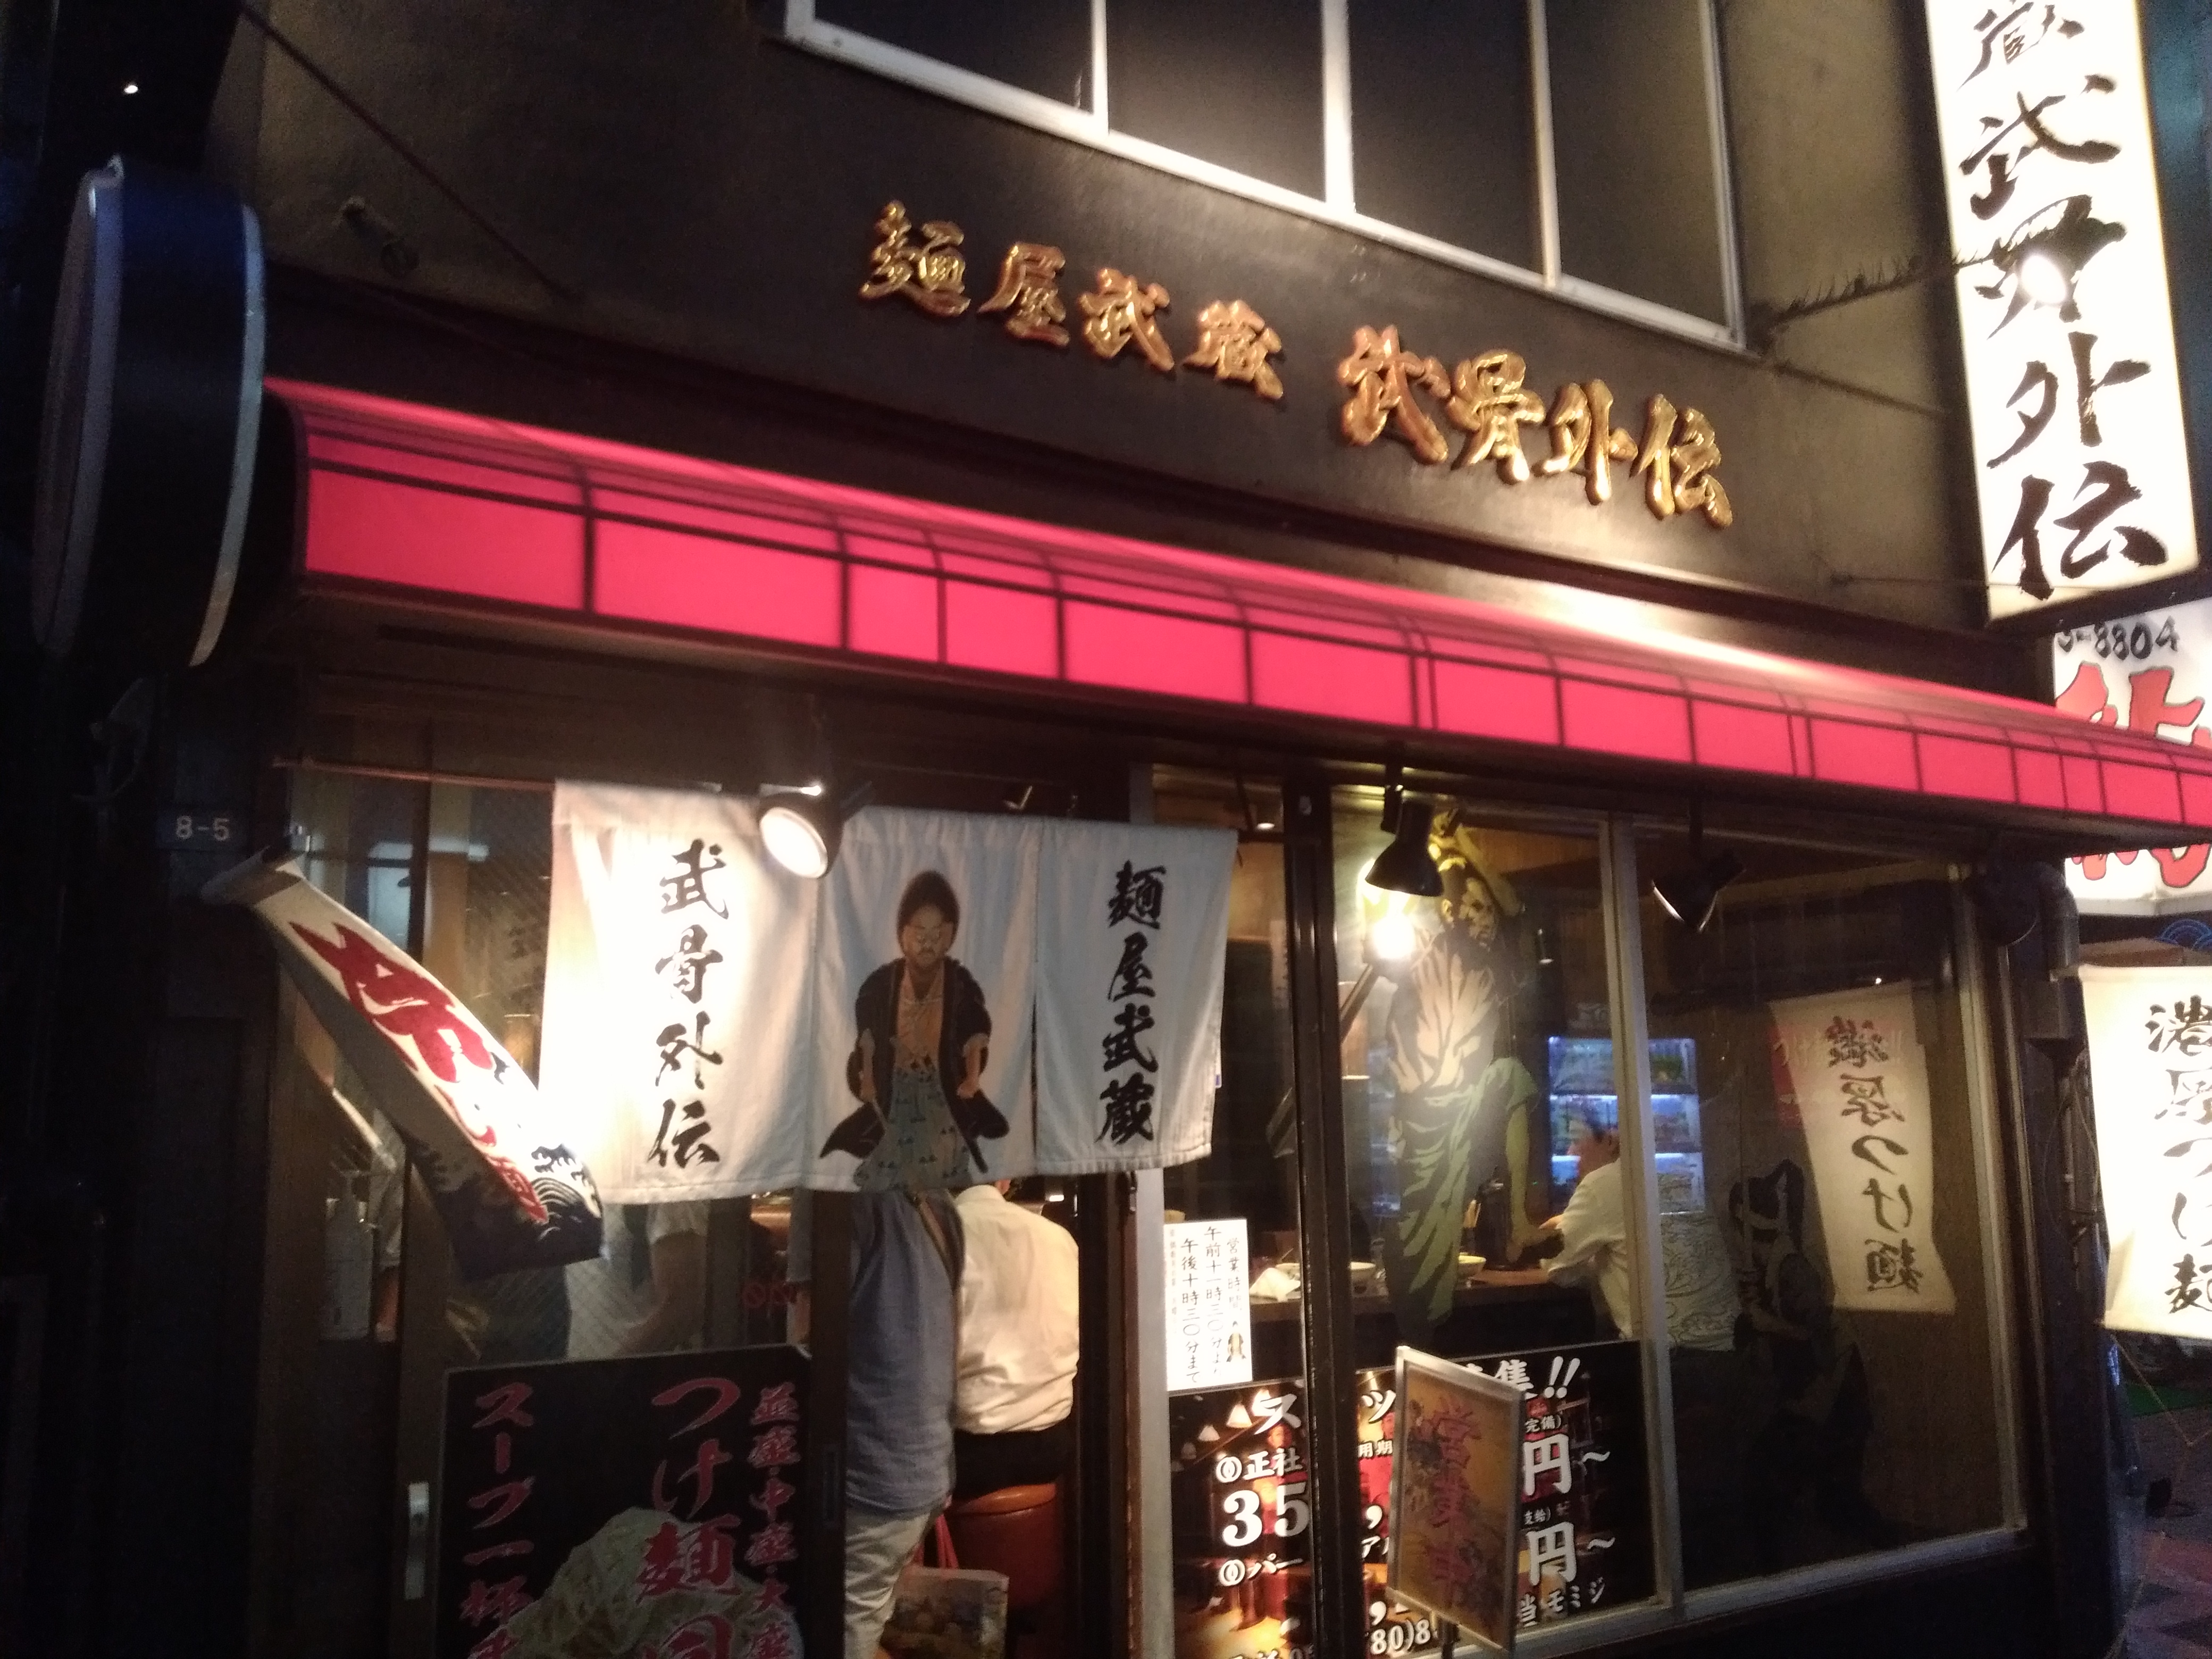 渋谷は都内にいくつも店舗を構える人気つけ麺屋、麺屋武蔵武骨外伝へ行ってきた。